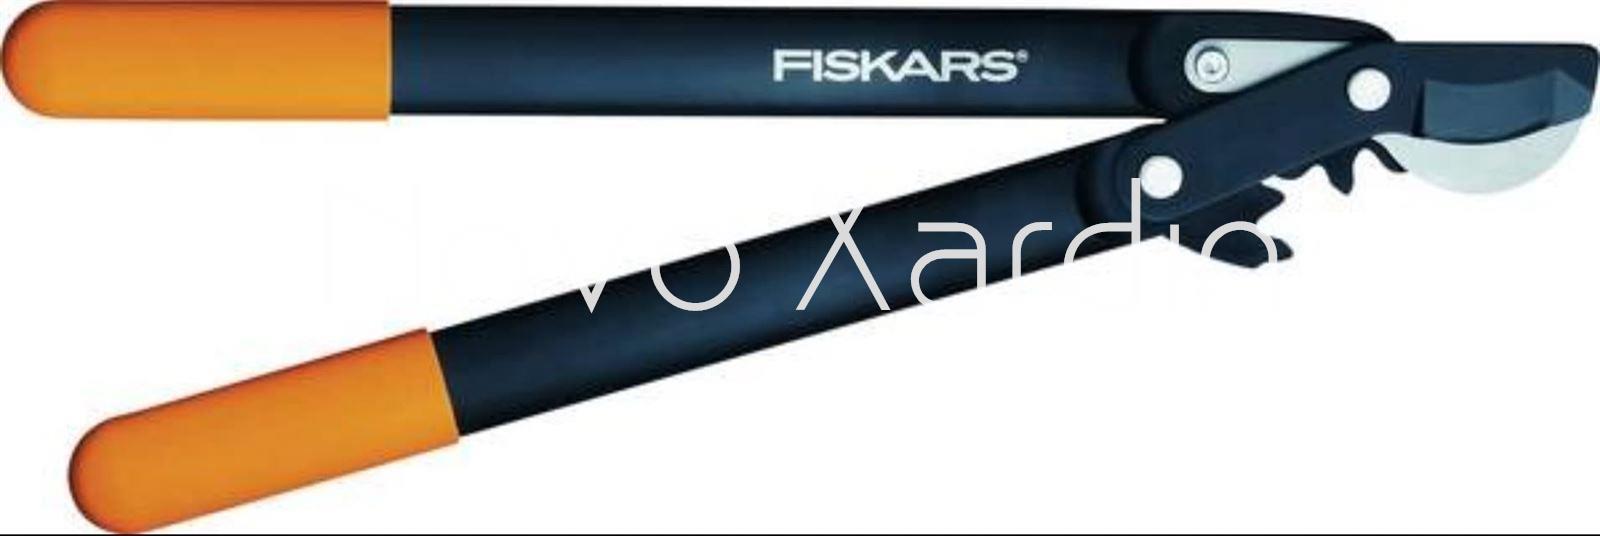 Podadora piñones hook Fiskars 45 cm - Imagen 1